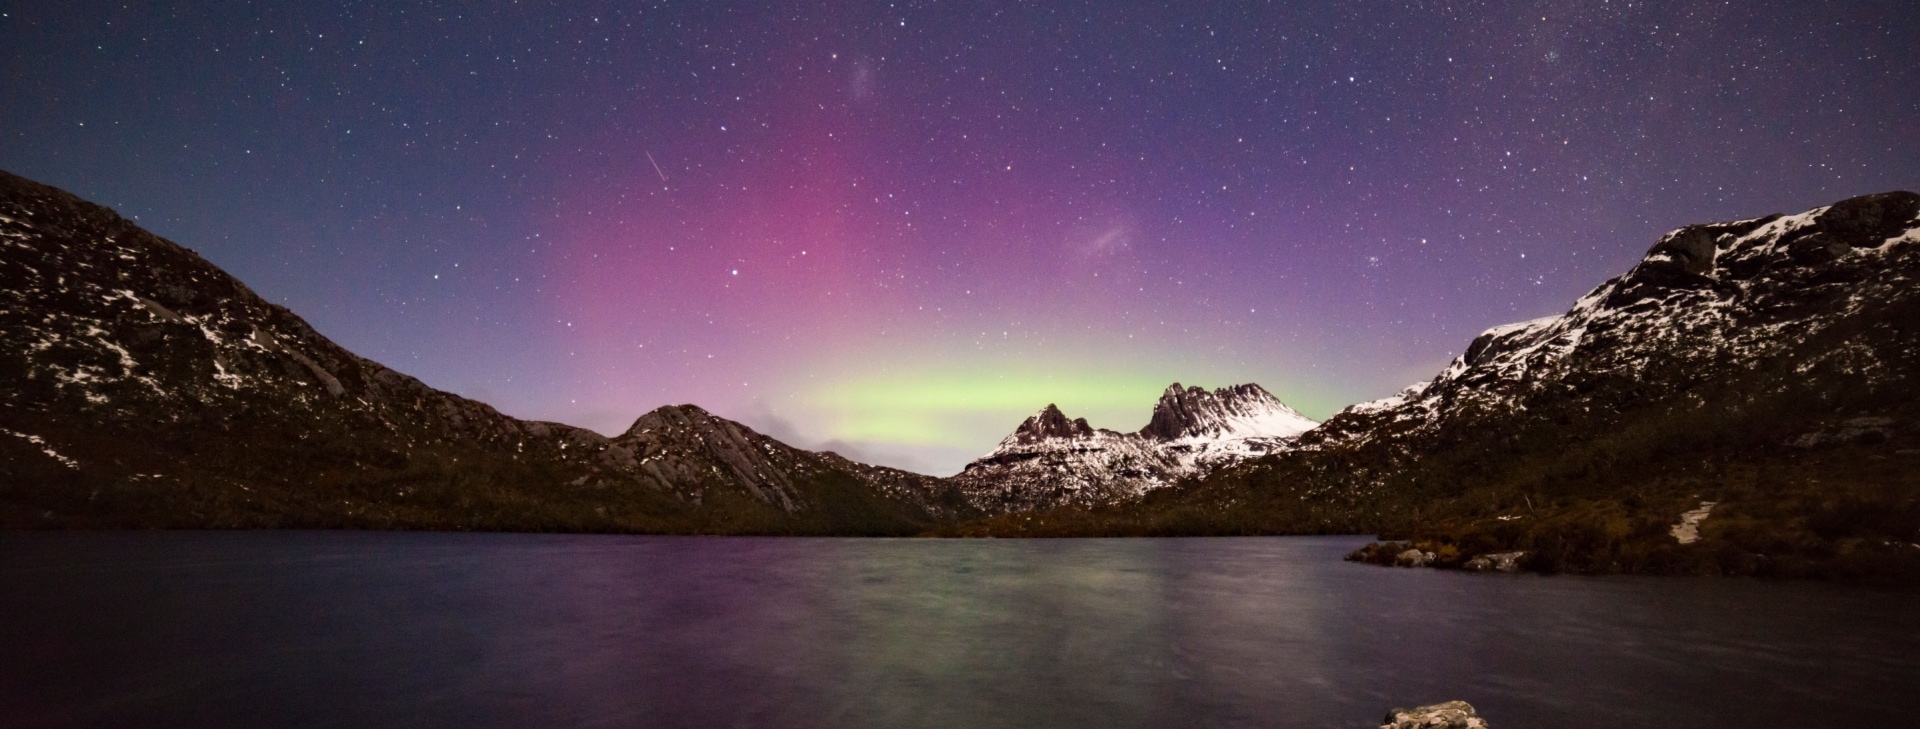 Aurora Australis, Cradle Mountain, Tasmanien © Pierre Destribats